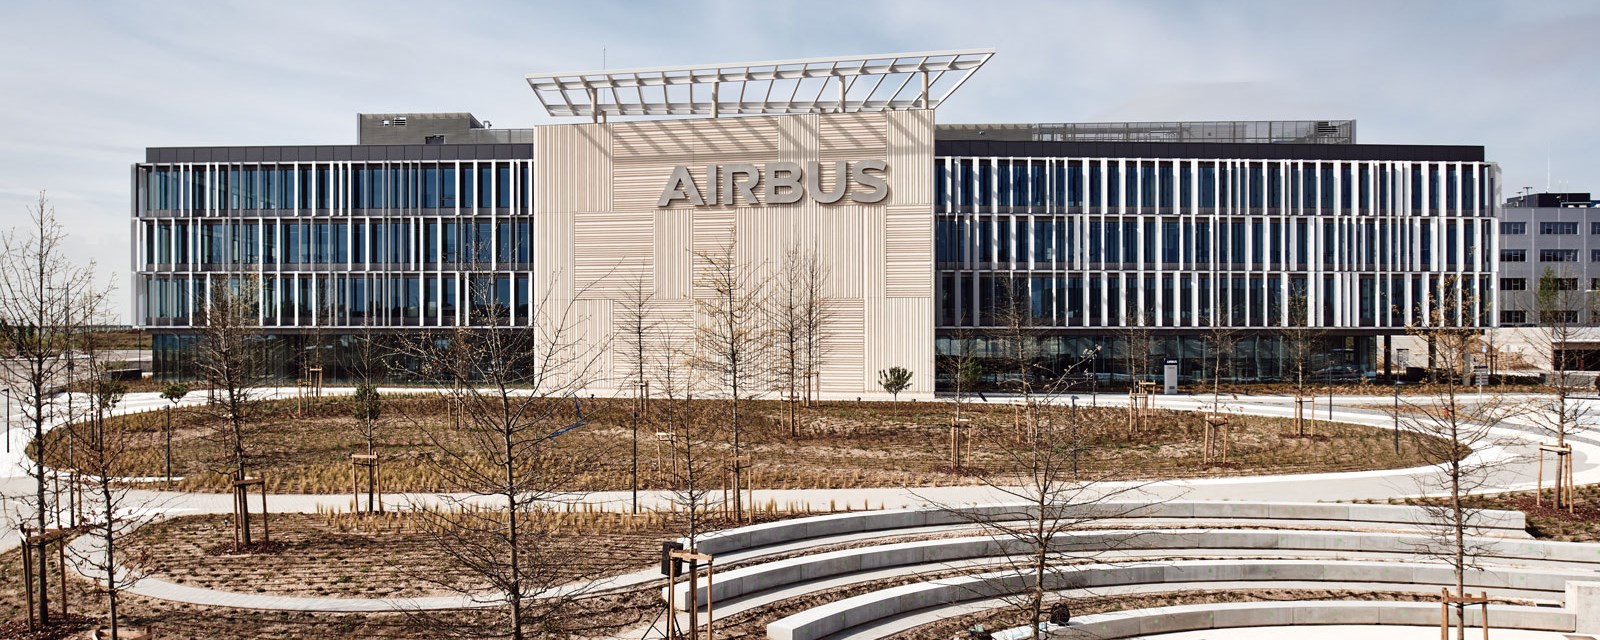 Airbus “Futura” Campus in Madrid